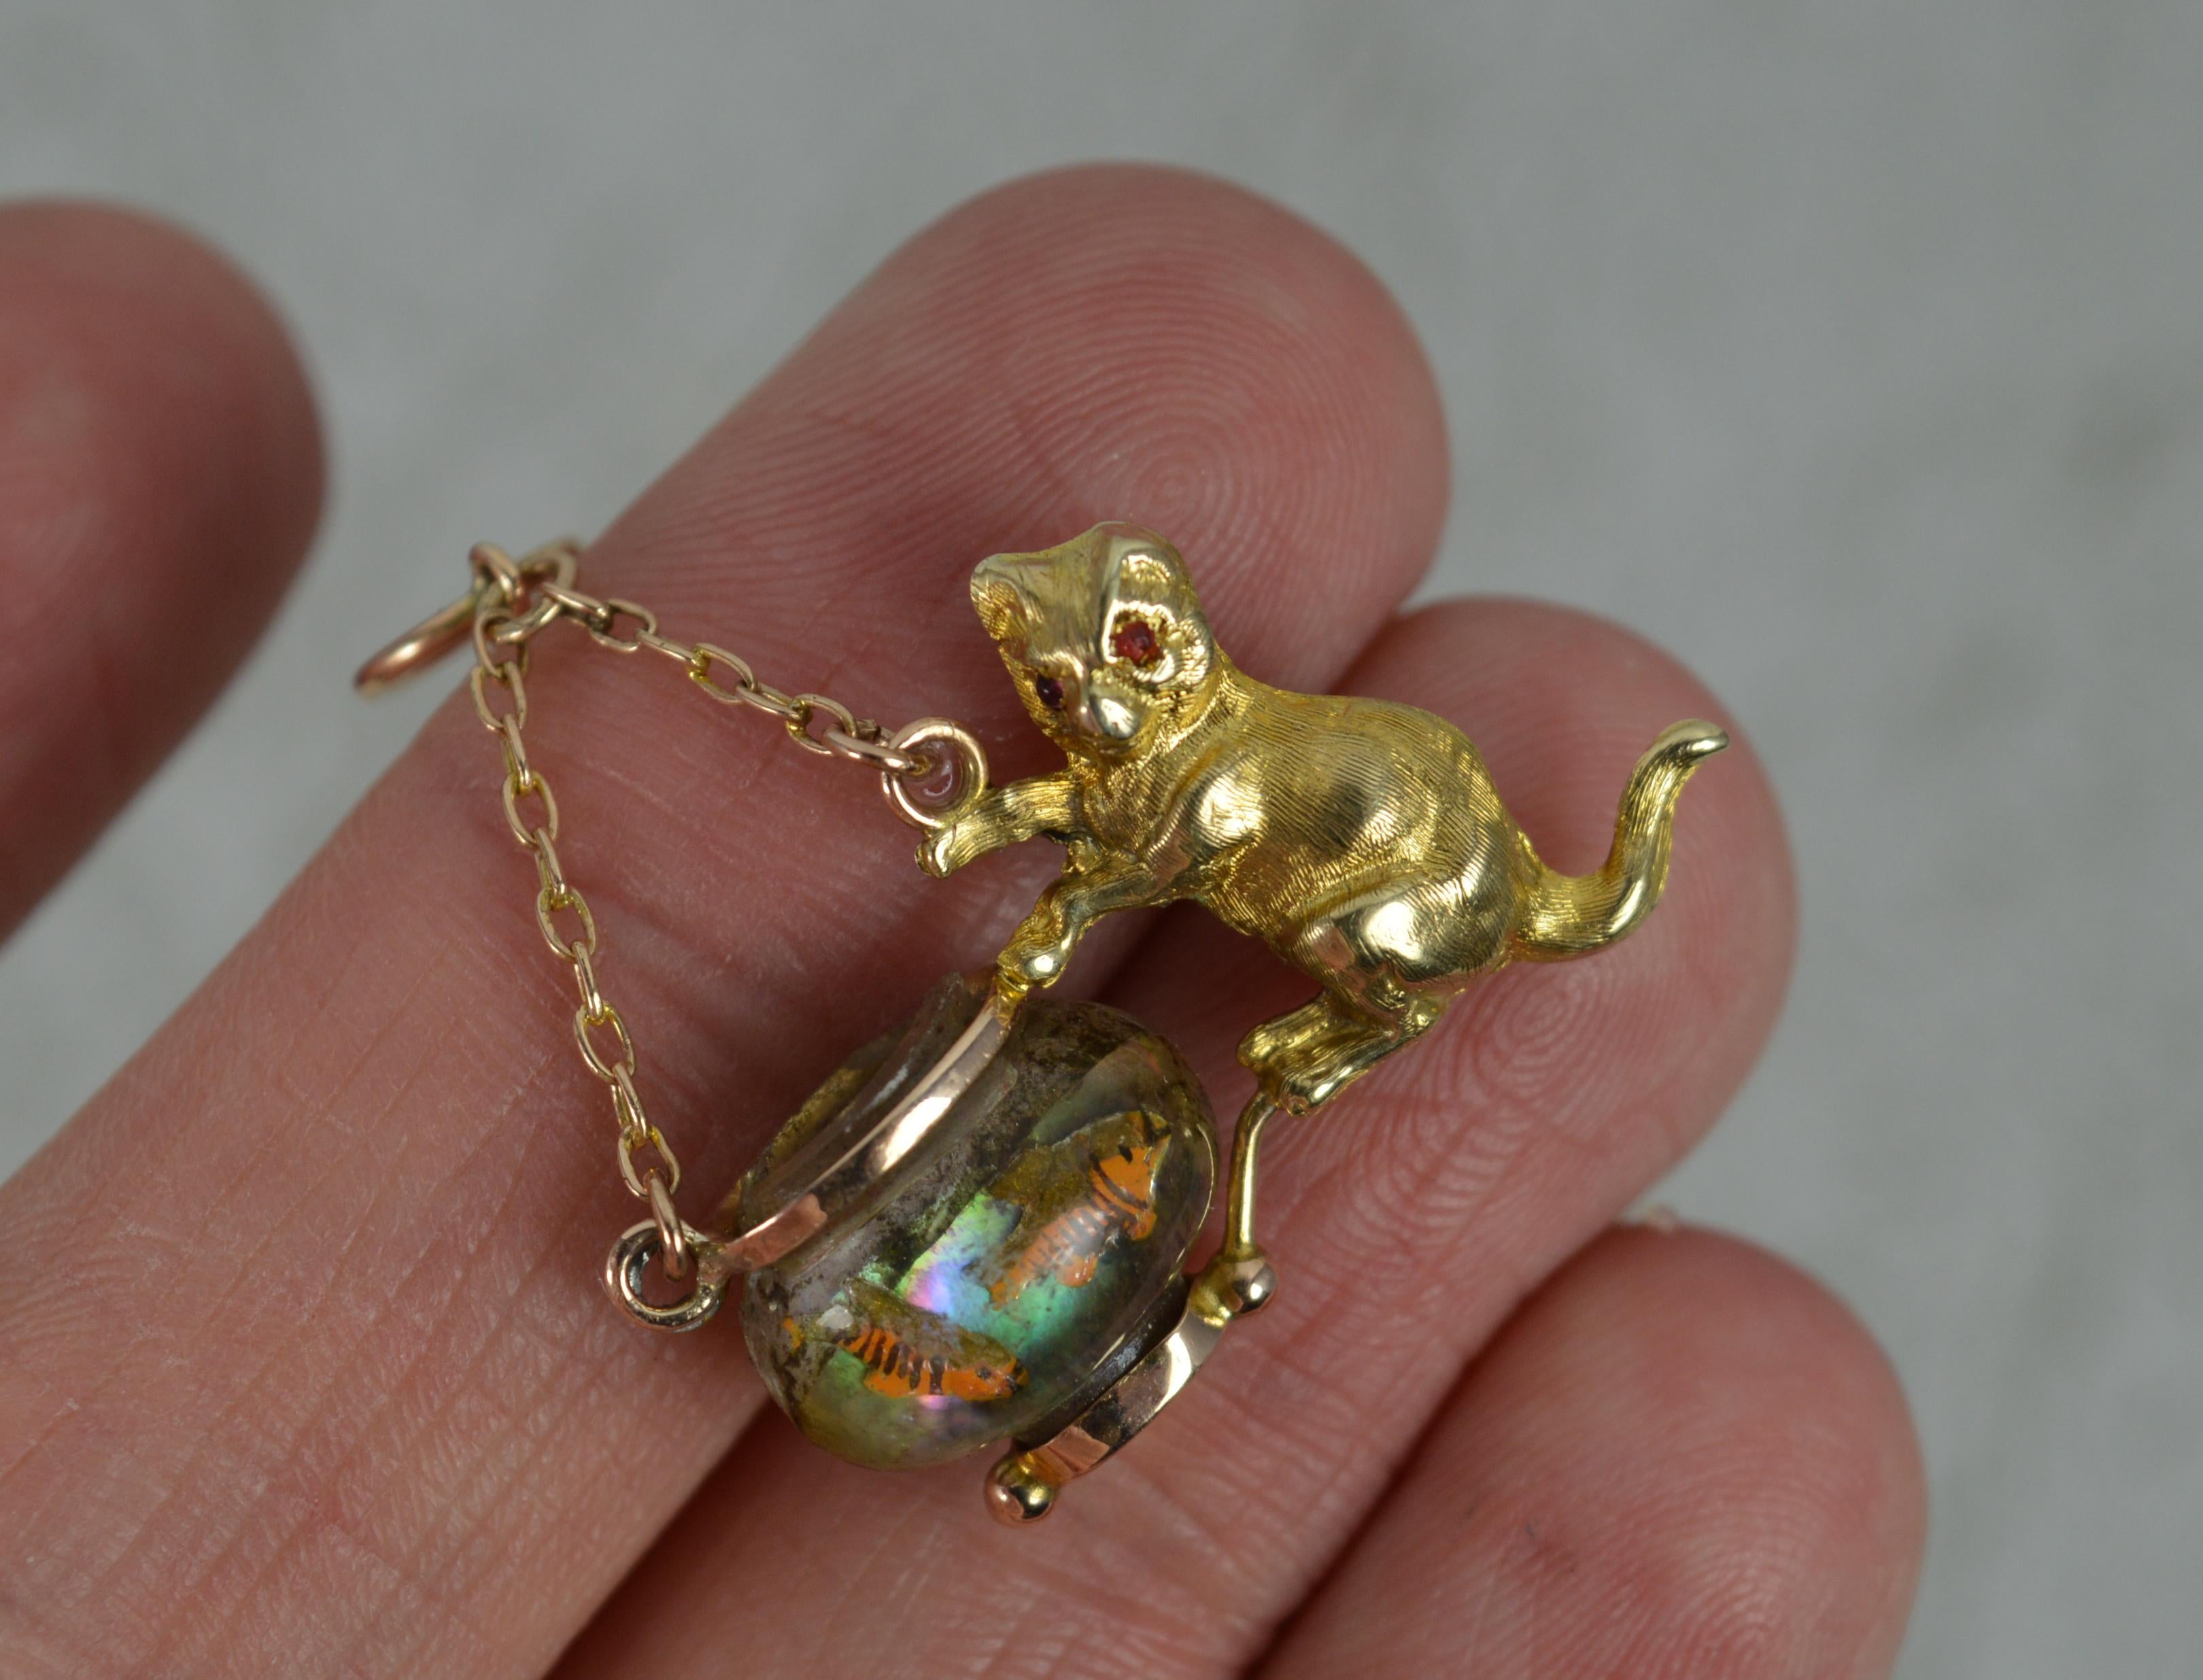 9ct gold cat pendant